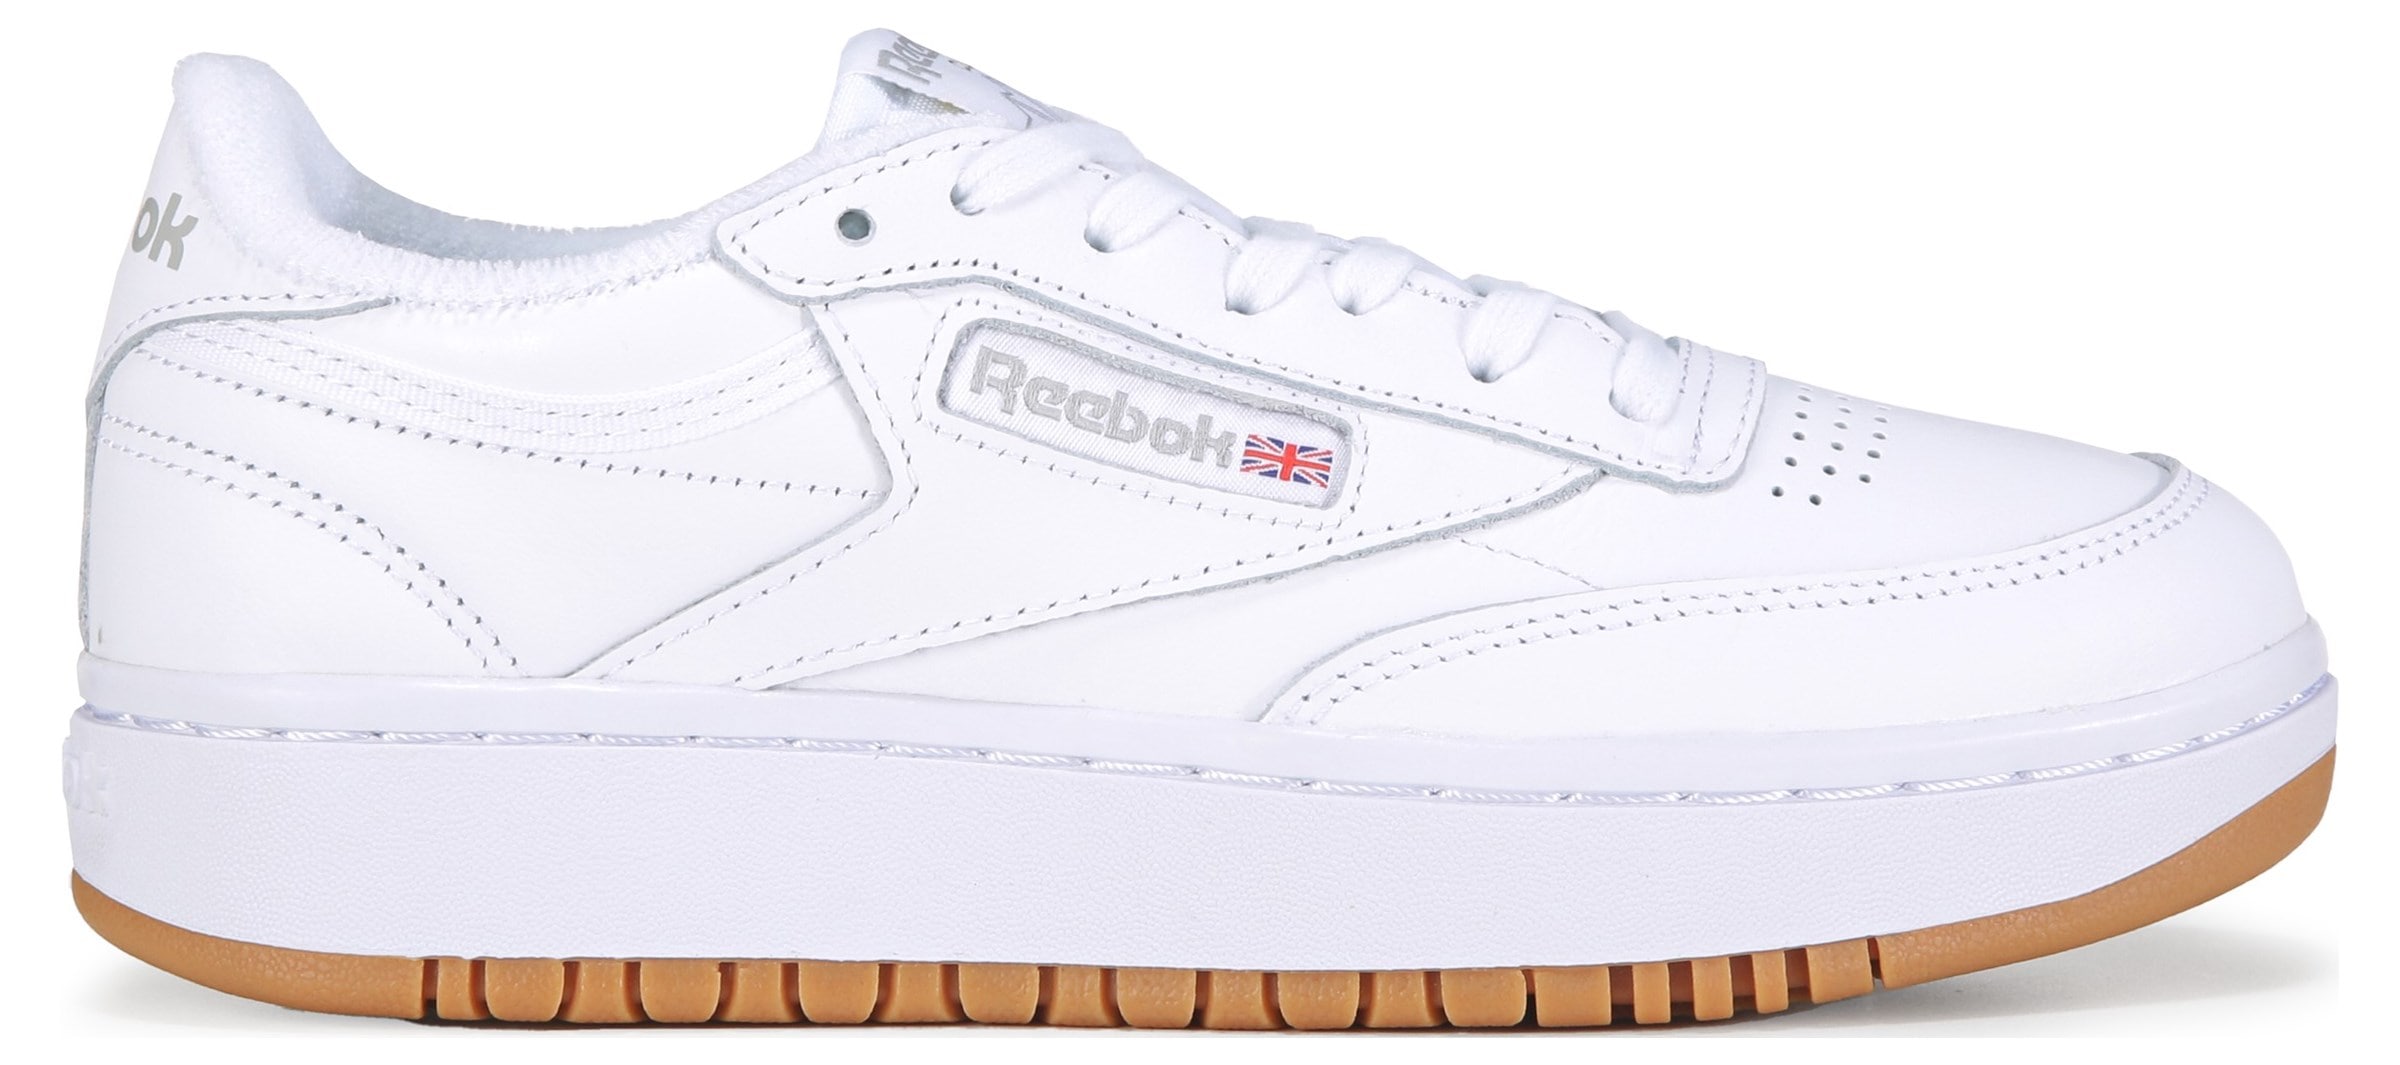 Reebok Club C Double Tennis Shoes, Women's Size 7.5 M, White